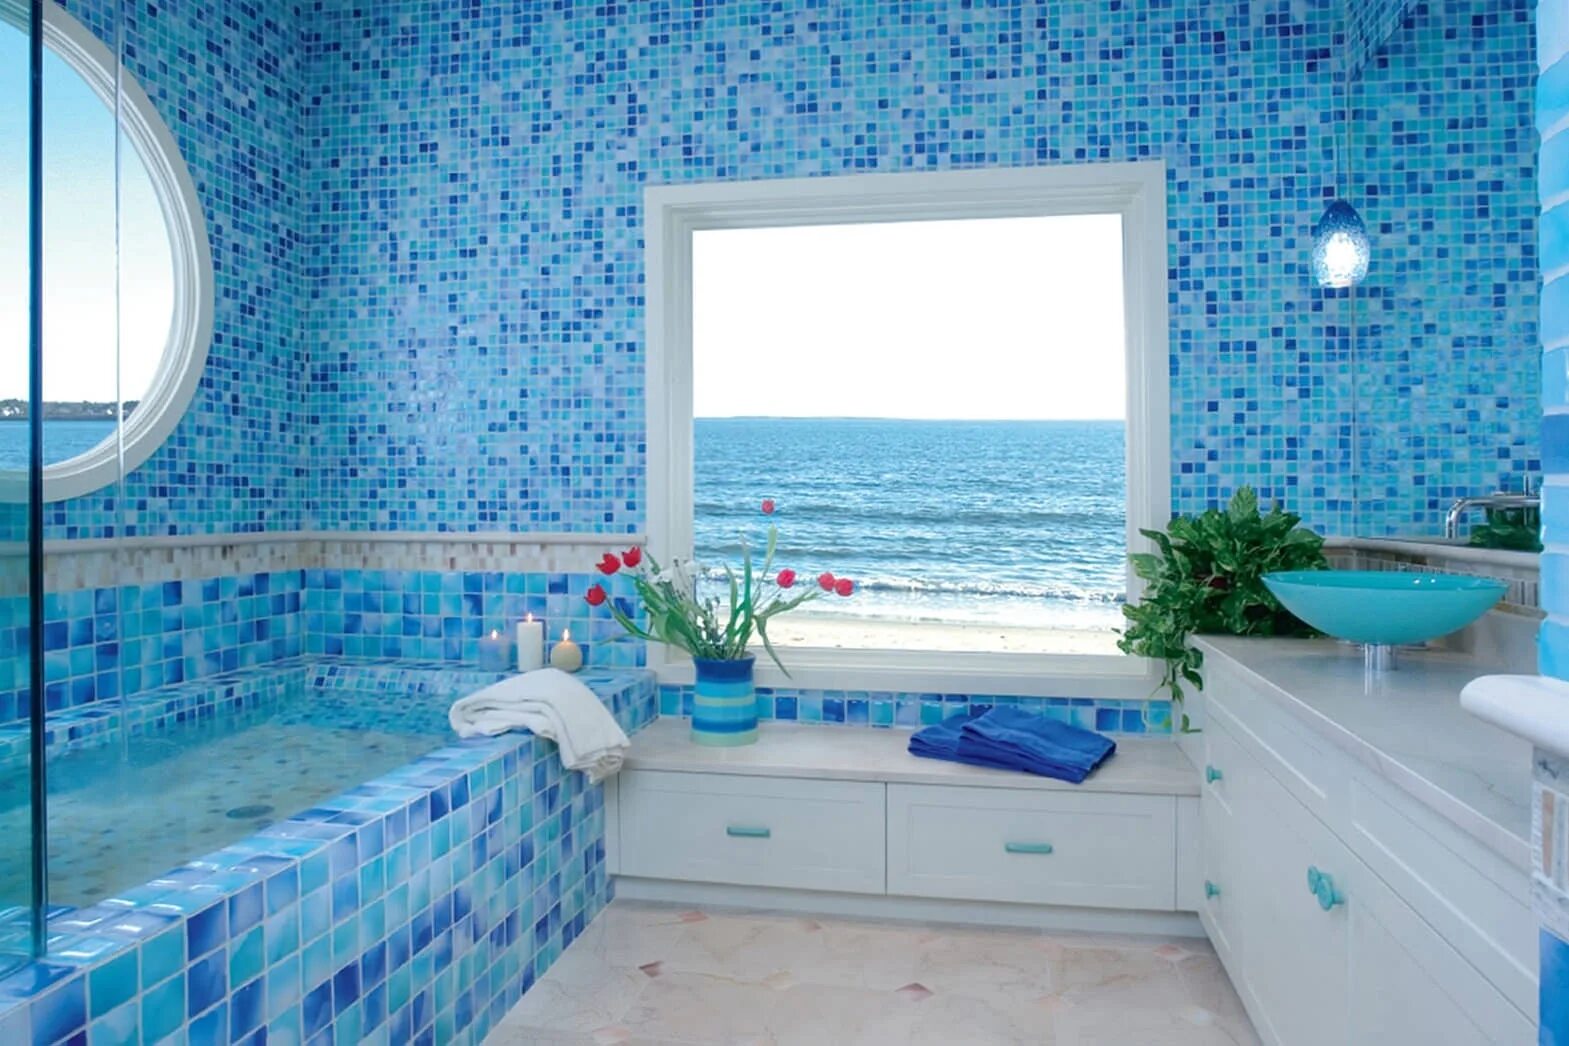 Какую плитку использовать в ванной. Голубая мозаика в ванной. Ванна в стиле моря. Ванная с голубой мозаикой. Ванная с голубой плиткой.